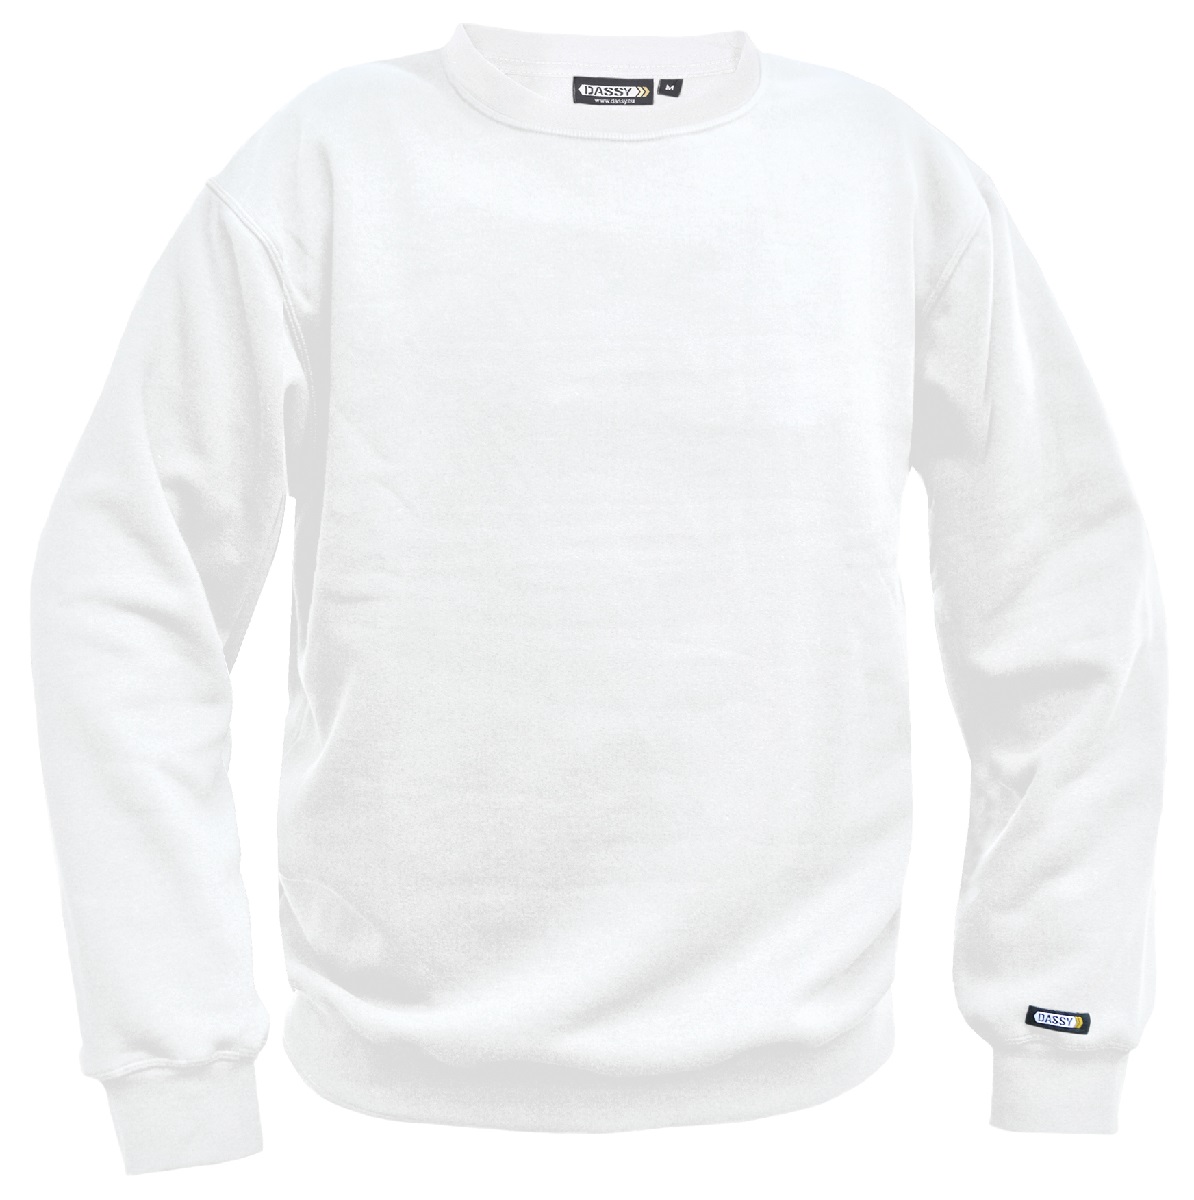 Modernes Sweatshirt mit eigenem Firmenlogo oder Firmennamen